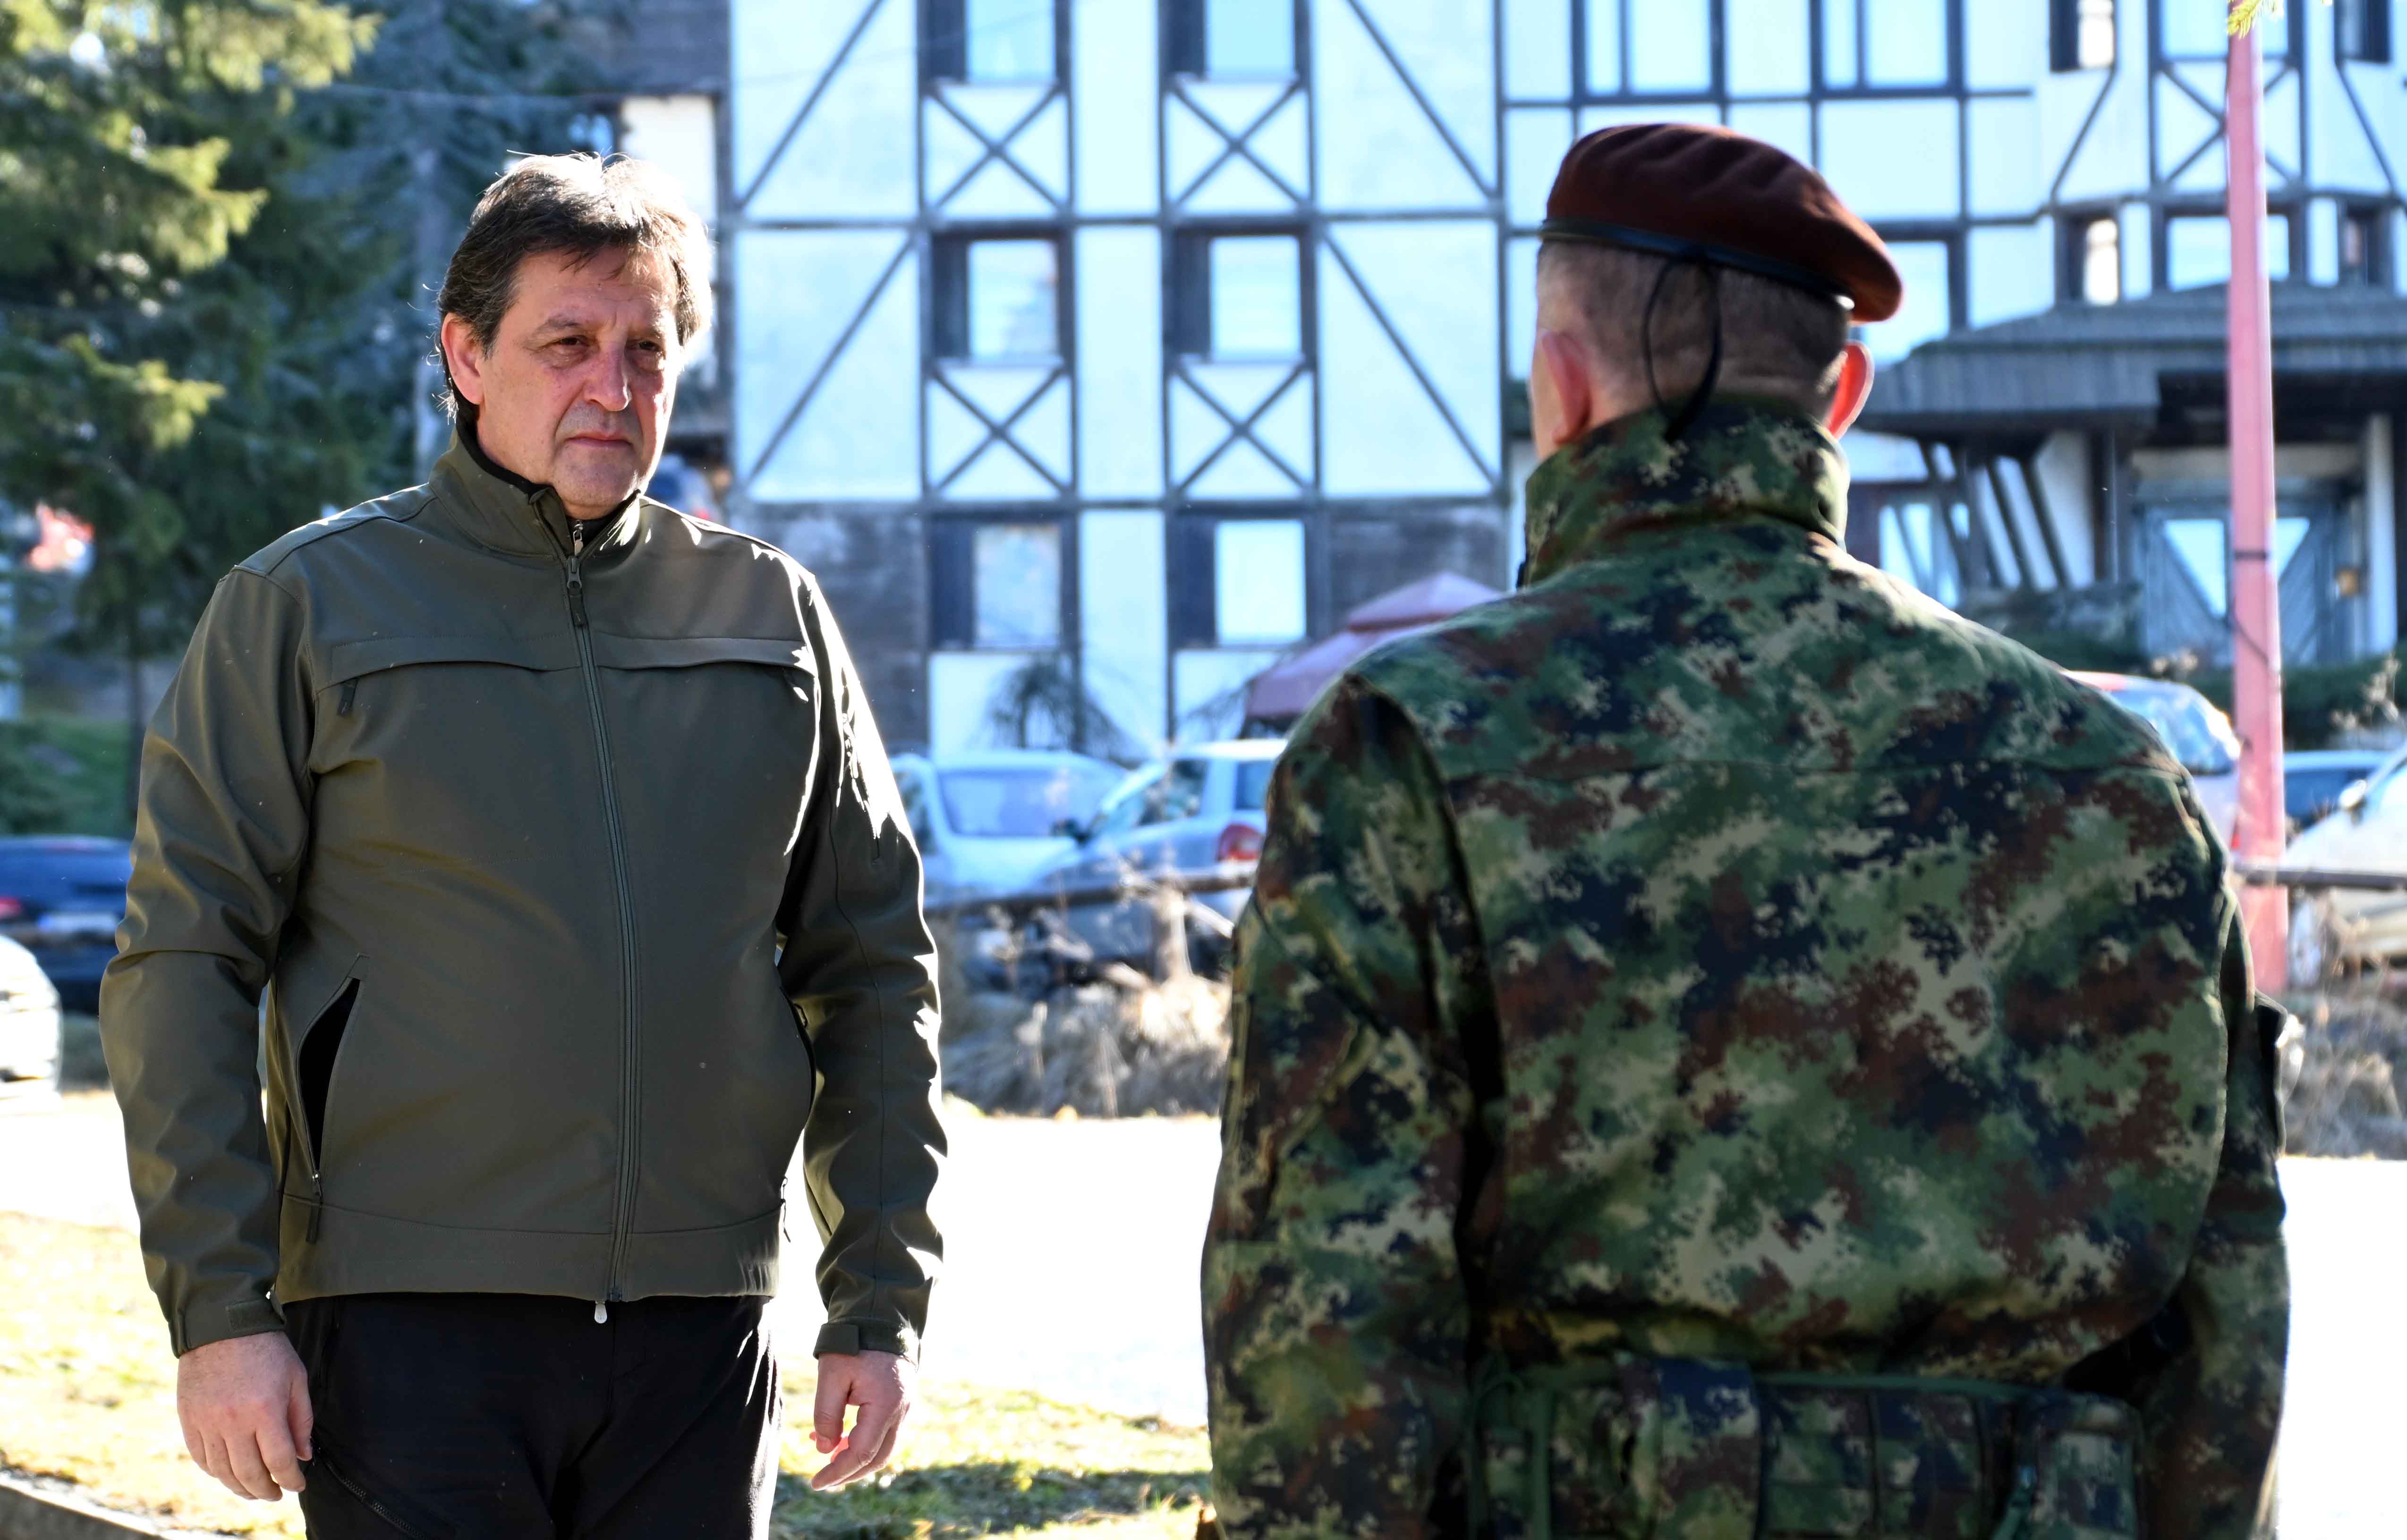 Ministar Bratislav Gašić poručio je na Kopaoniku da će predsednik i državno rukovodstvo učiniti sve da sačuvaju mir i stabilnost